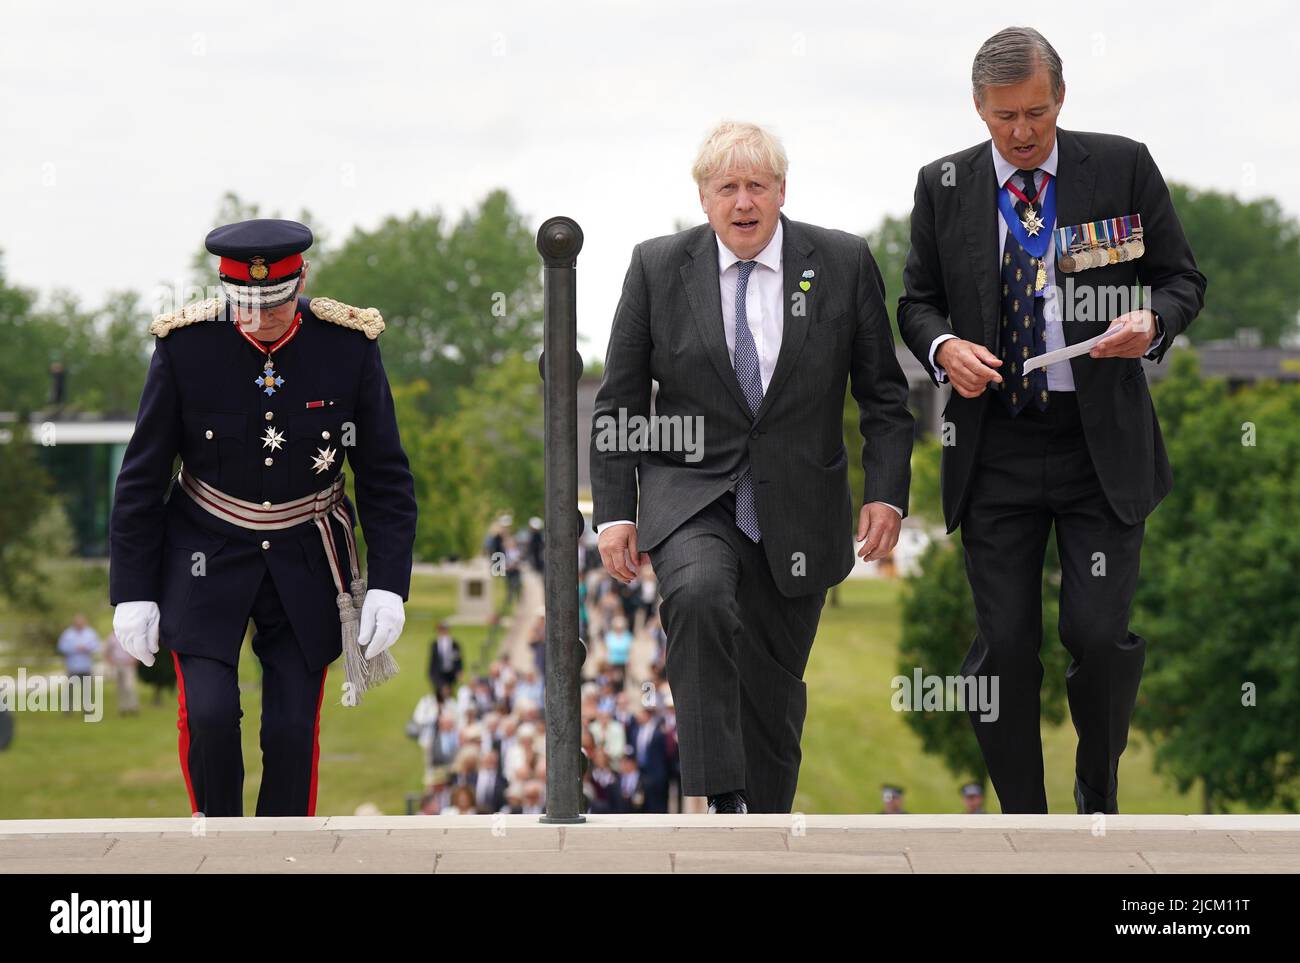 Il primo Ministro Boris Johnson (centro) al National Memorial Arboretum di Alrewas, Staffordshire, prima di un servizio per celebrare il 40th anniversario della liberazione delle Isole Falkland. Data foto: Martedì 14 giugno 2022. Foto Stock